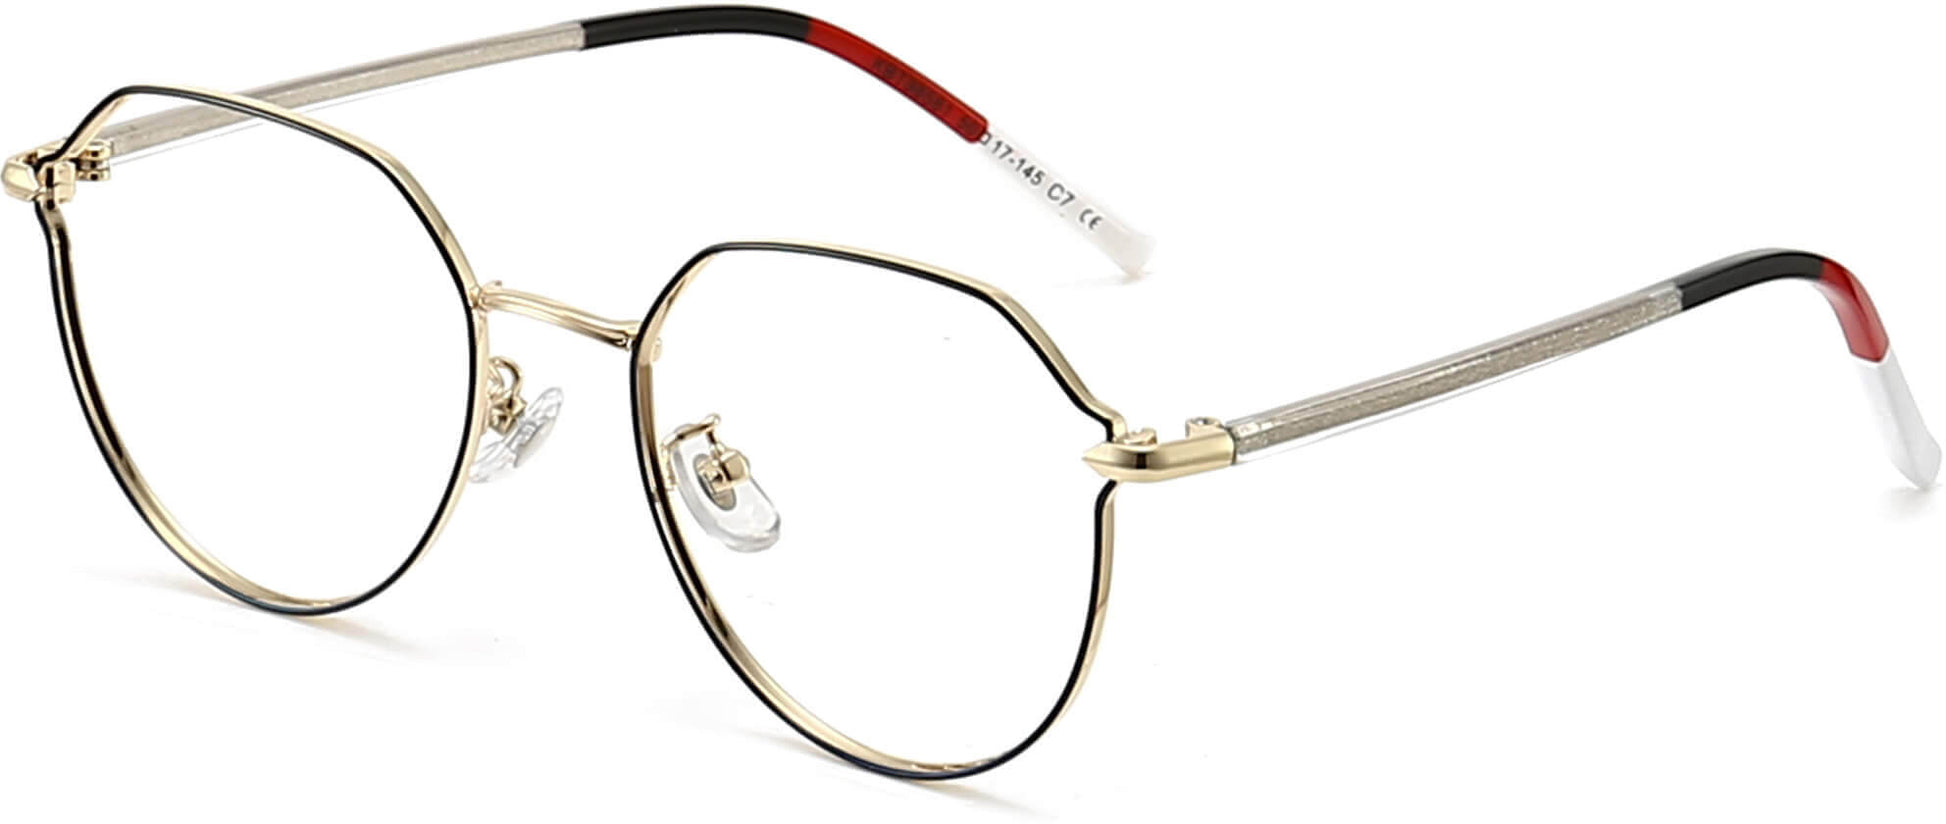 Daniella Geometric Black Eyeglasses from ANRRI, angle view